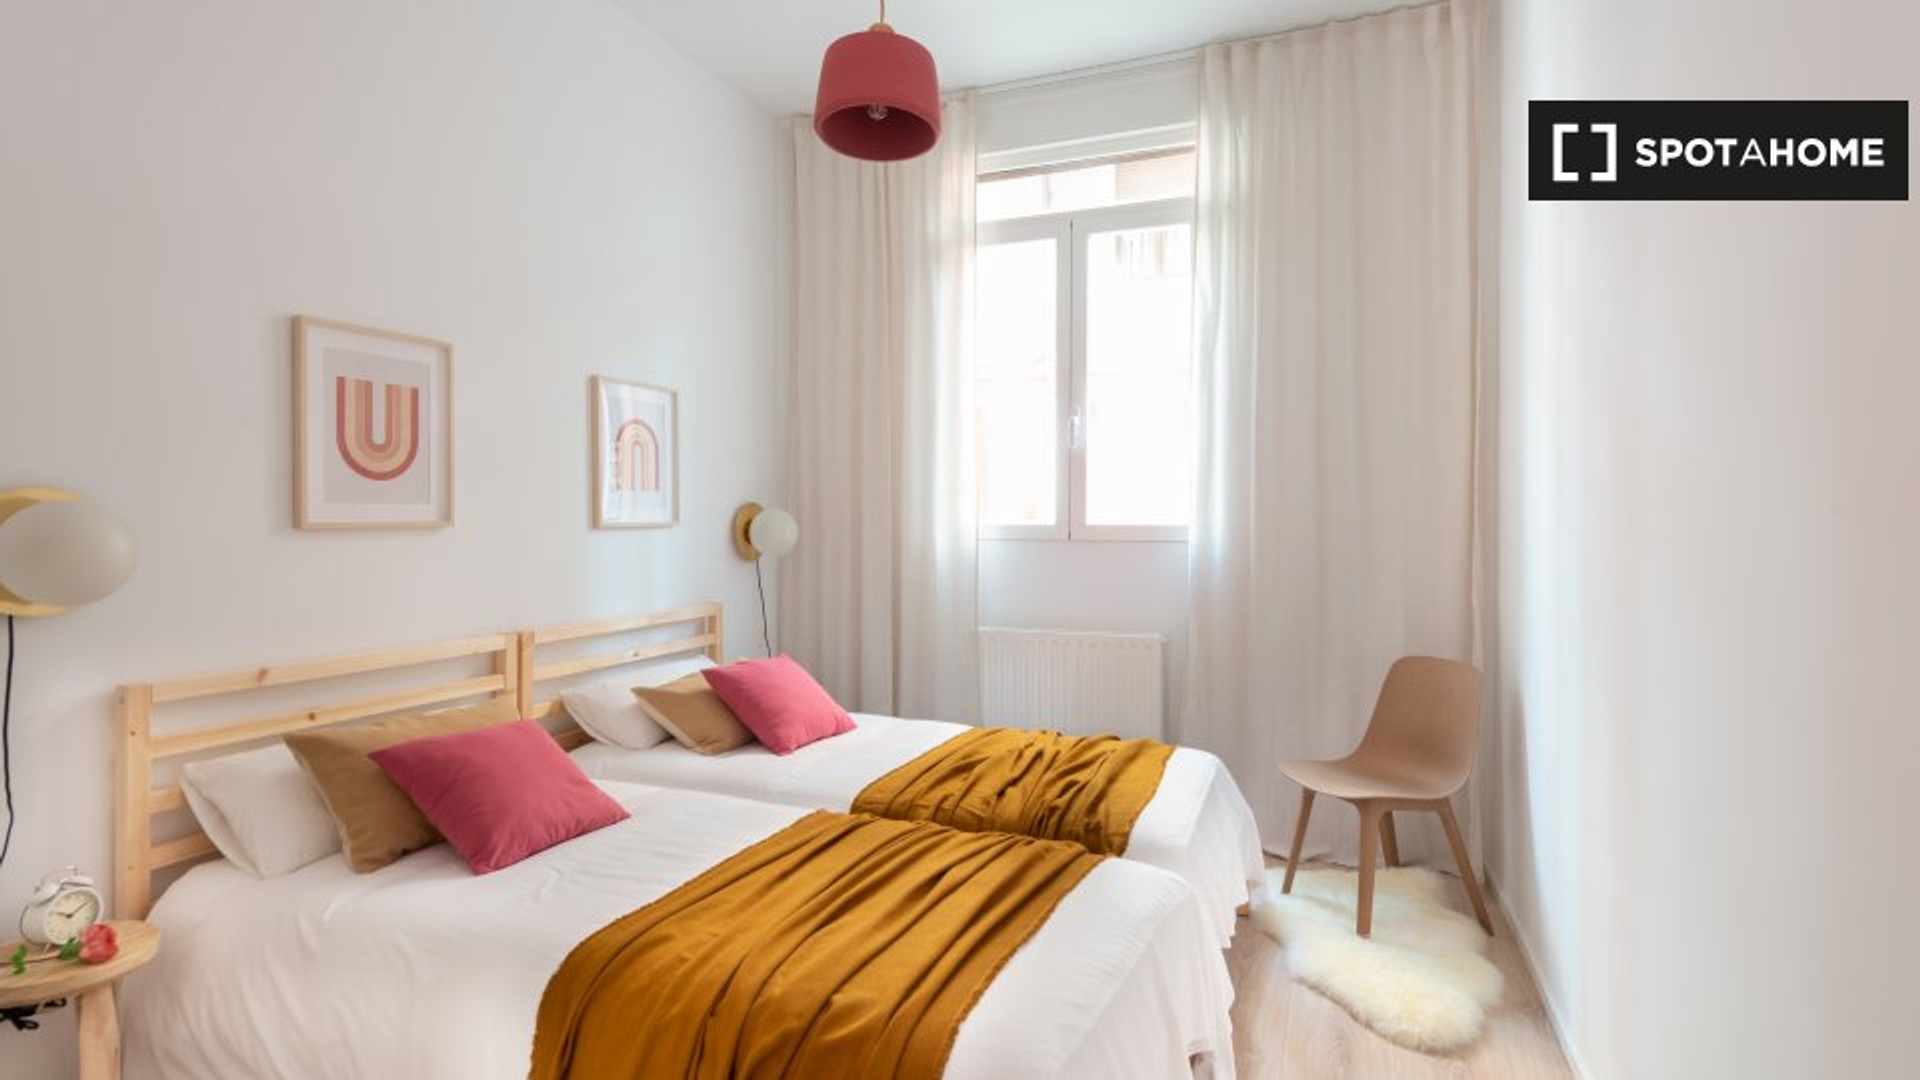 Apartamento moderno e brilhante em Bilbau